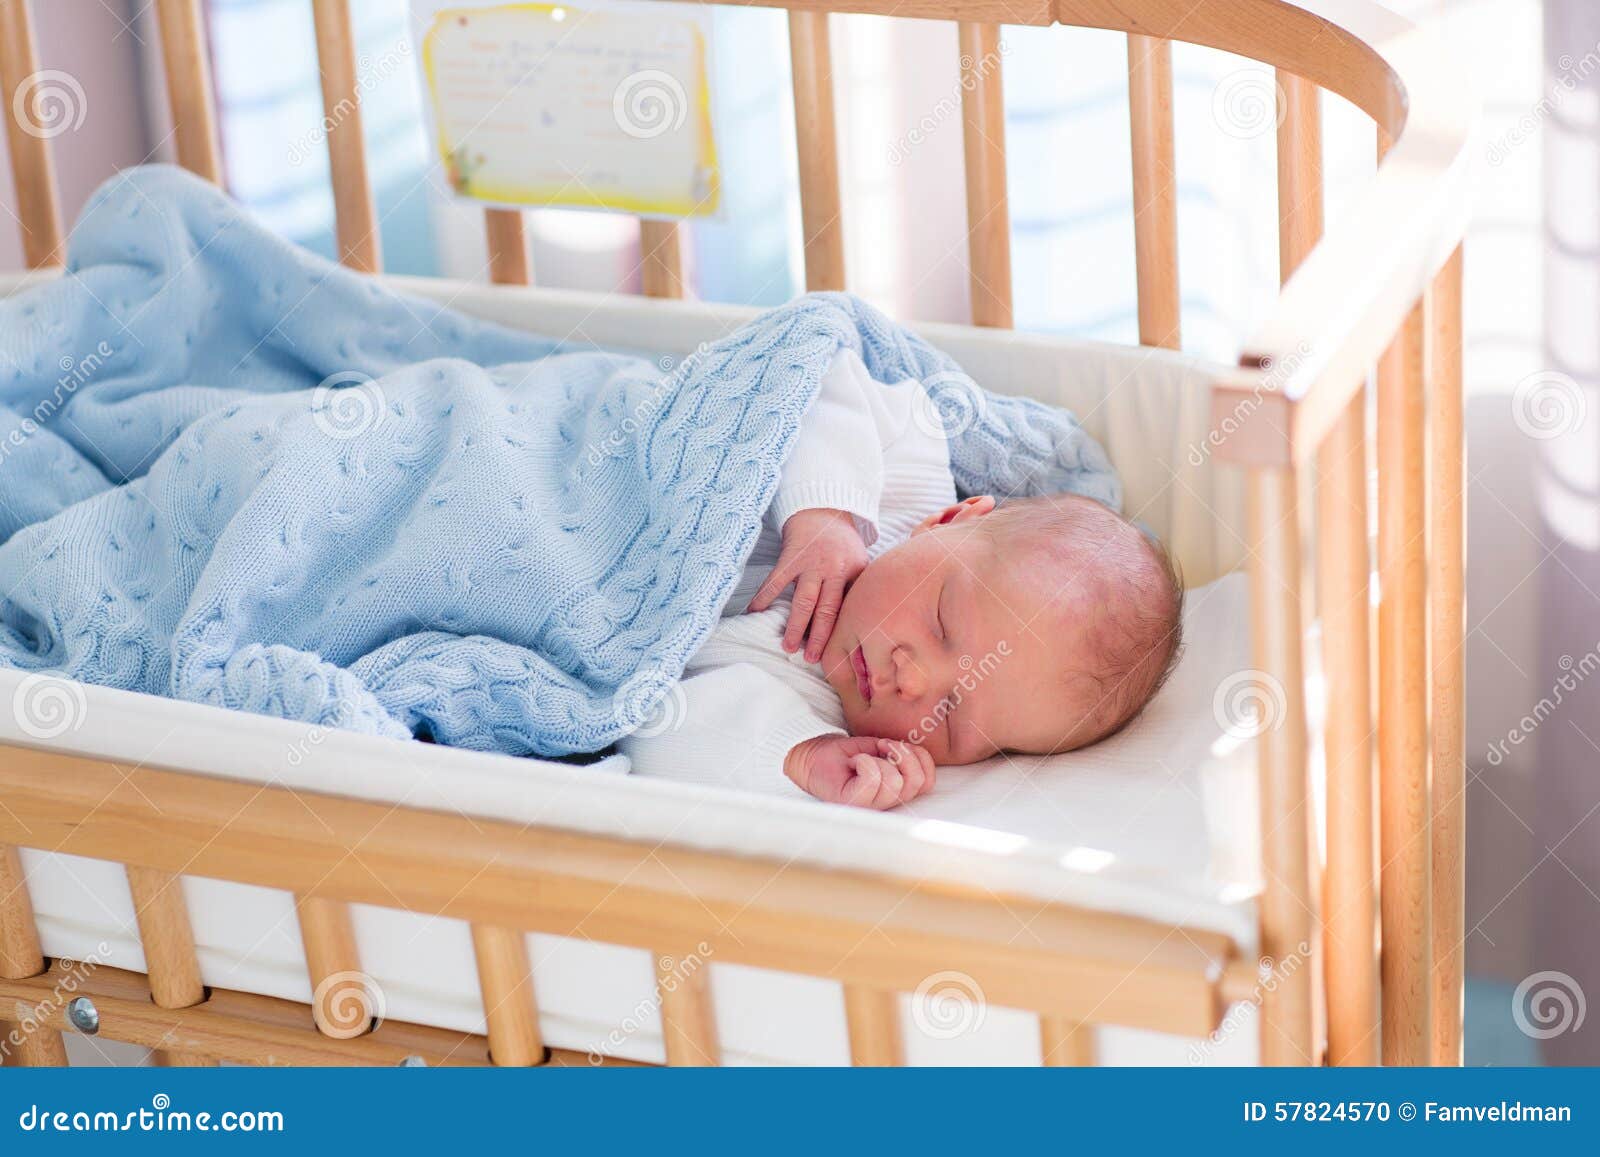 До скольки спят родители. Малыш в кроватке. Младенец в кроватке. Кроватка для новорожденного. Спящий малыш в кроватке.